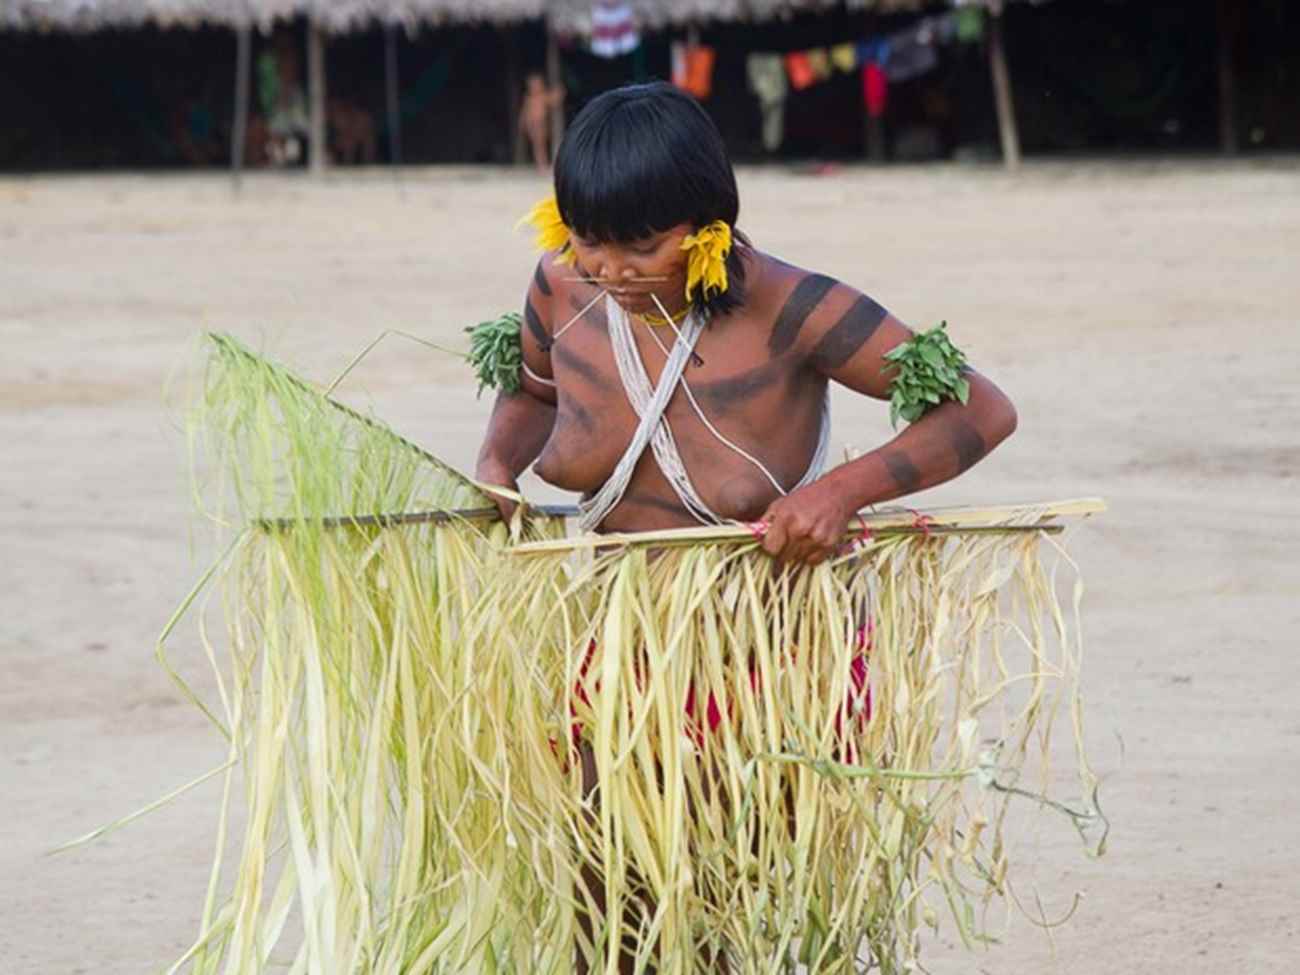 Mulheres Yanomamis fizeram uma apresentação aos visitantes. Foto: Inaê Brandão/ G1 RR